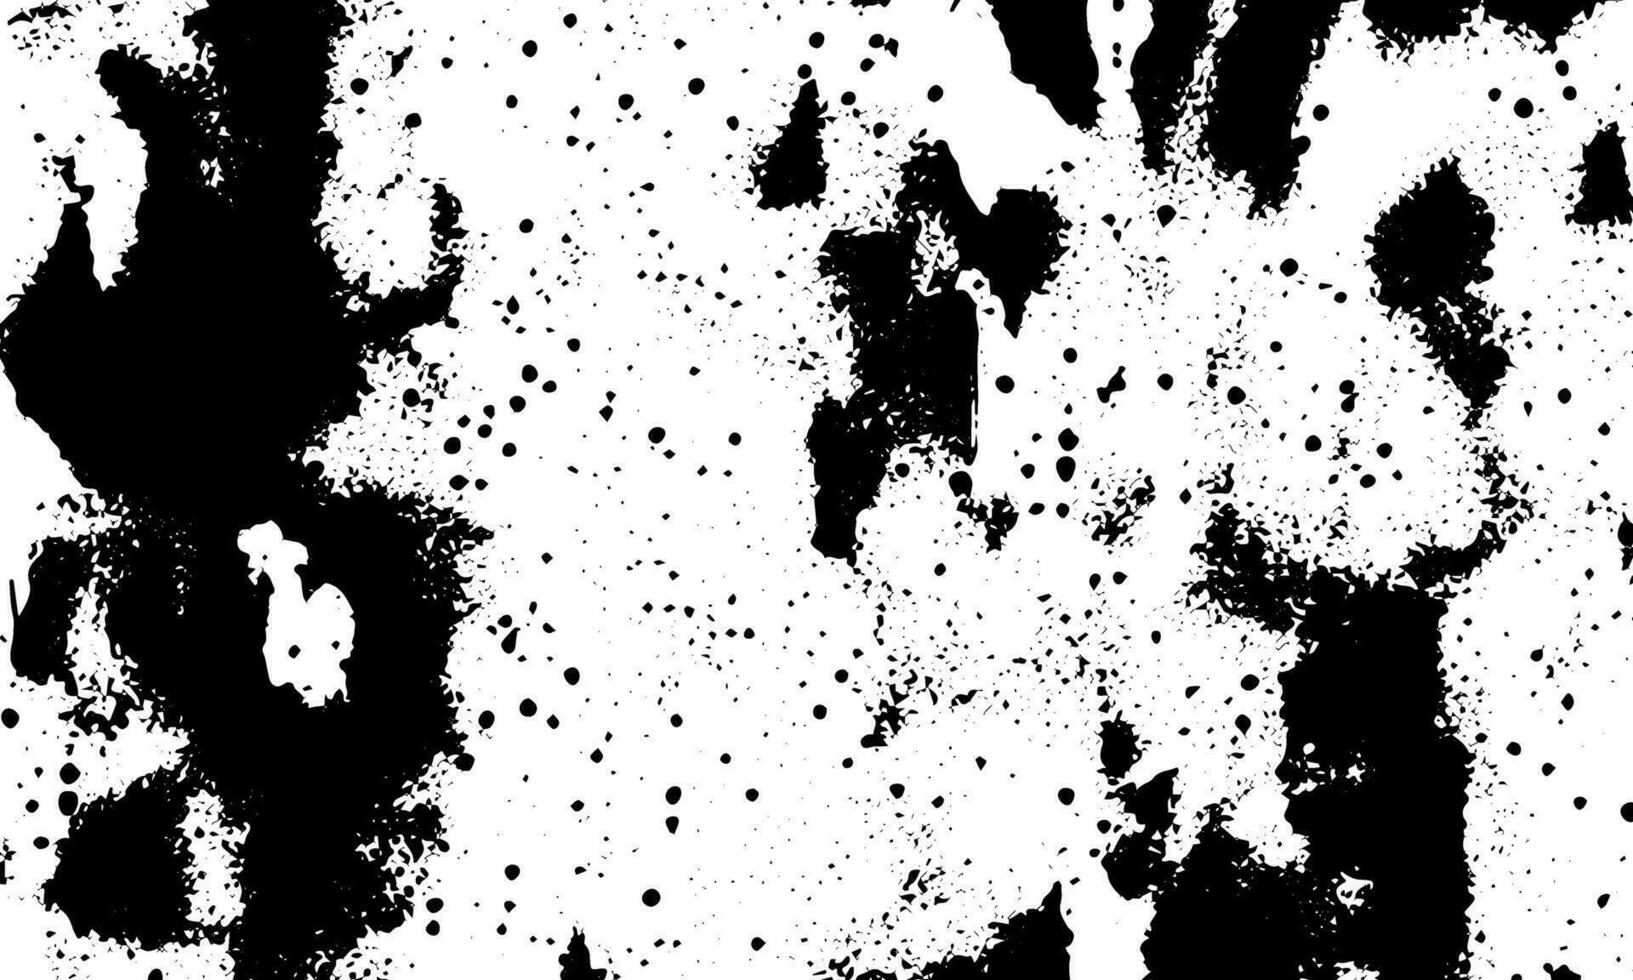 grunge detaljerad svart abstrakt textur. vektor bakgrund